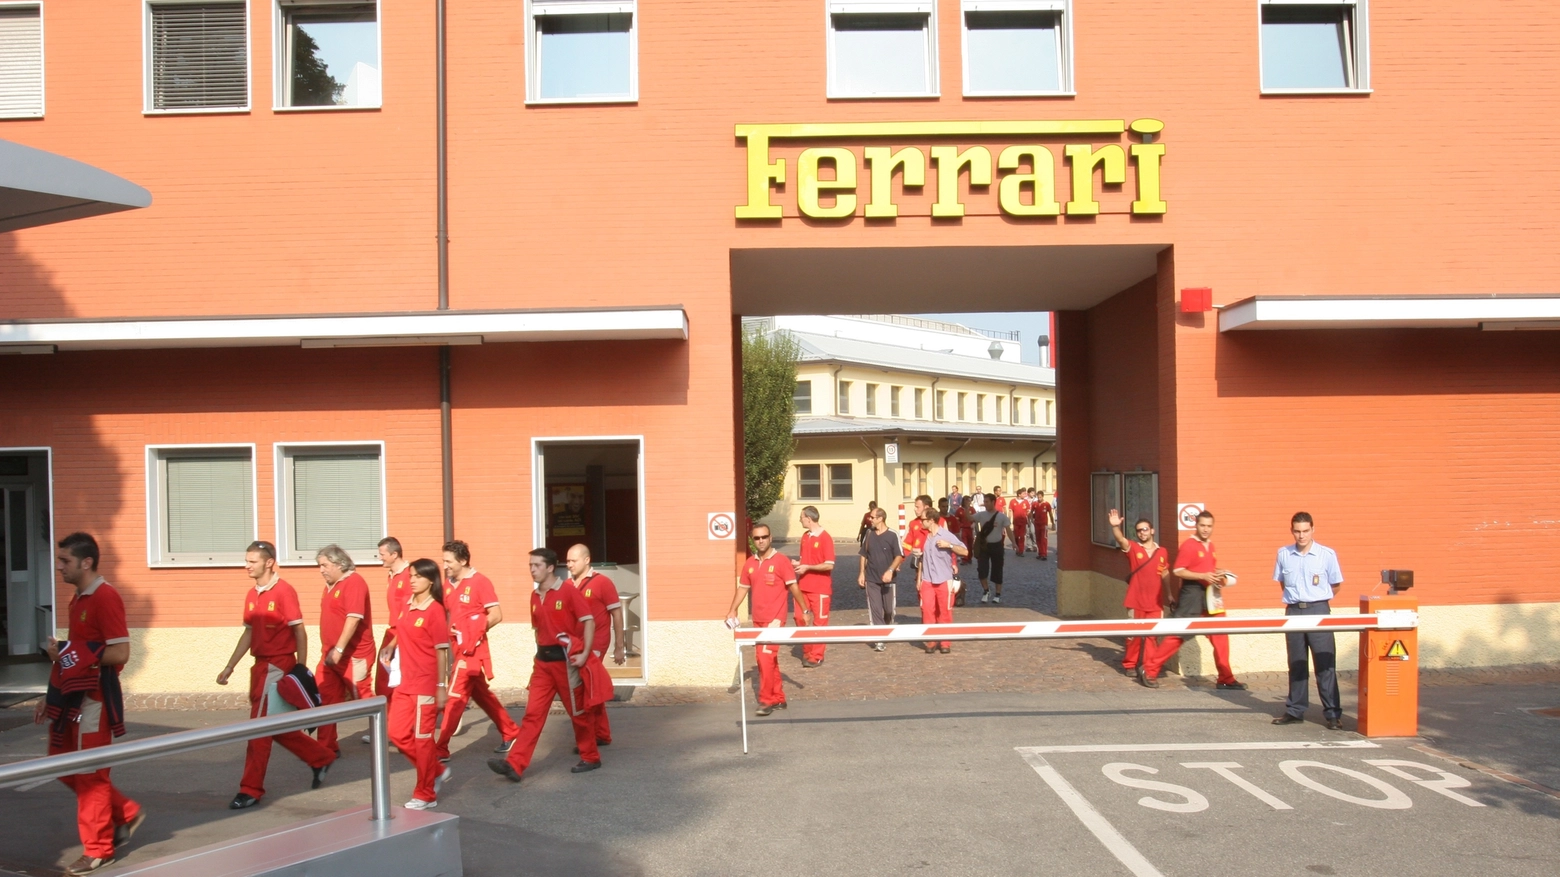 La Ferrari a Maranello (FotoFiocchi)